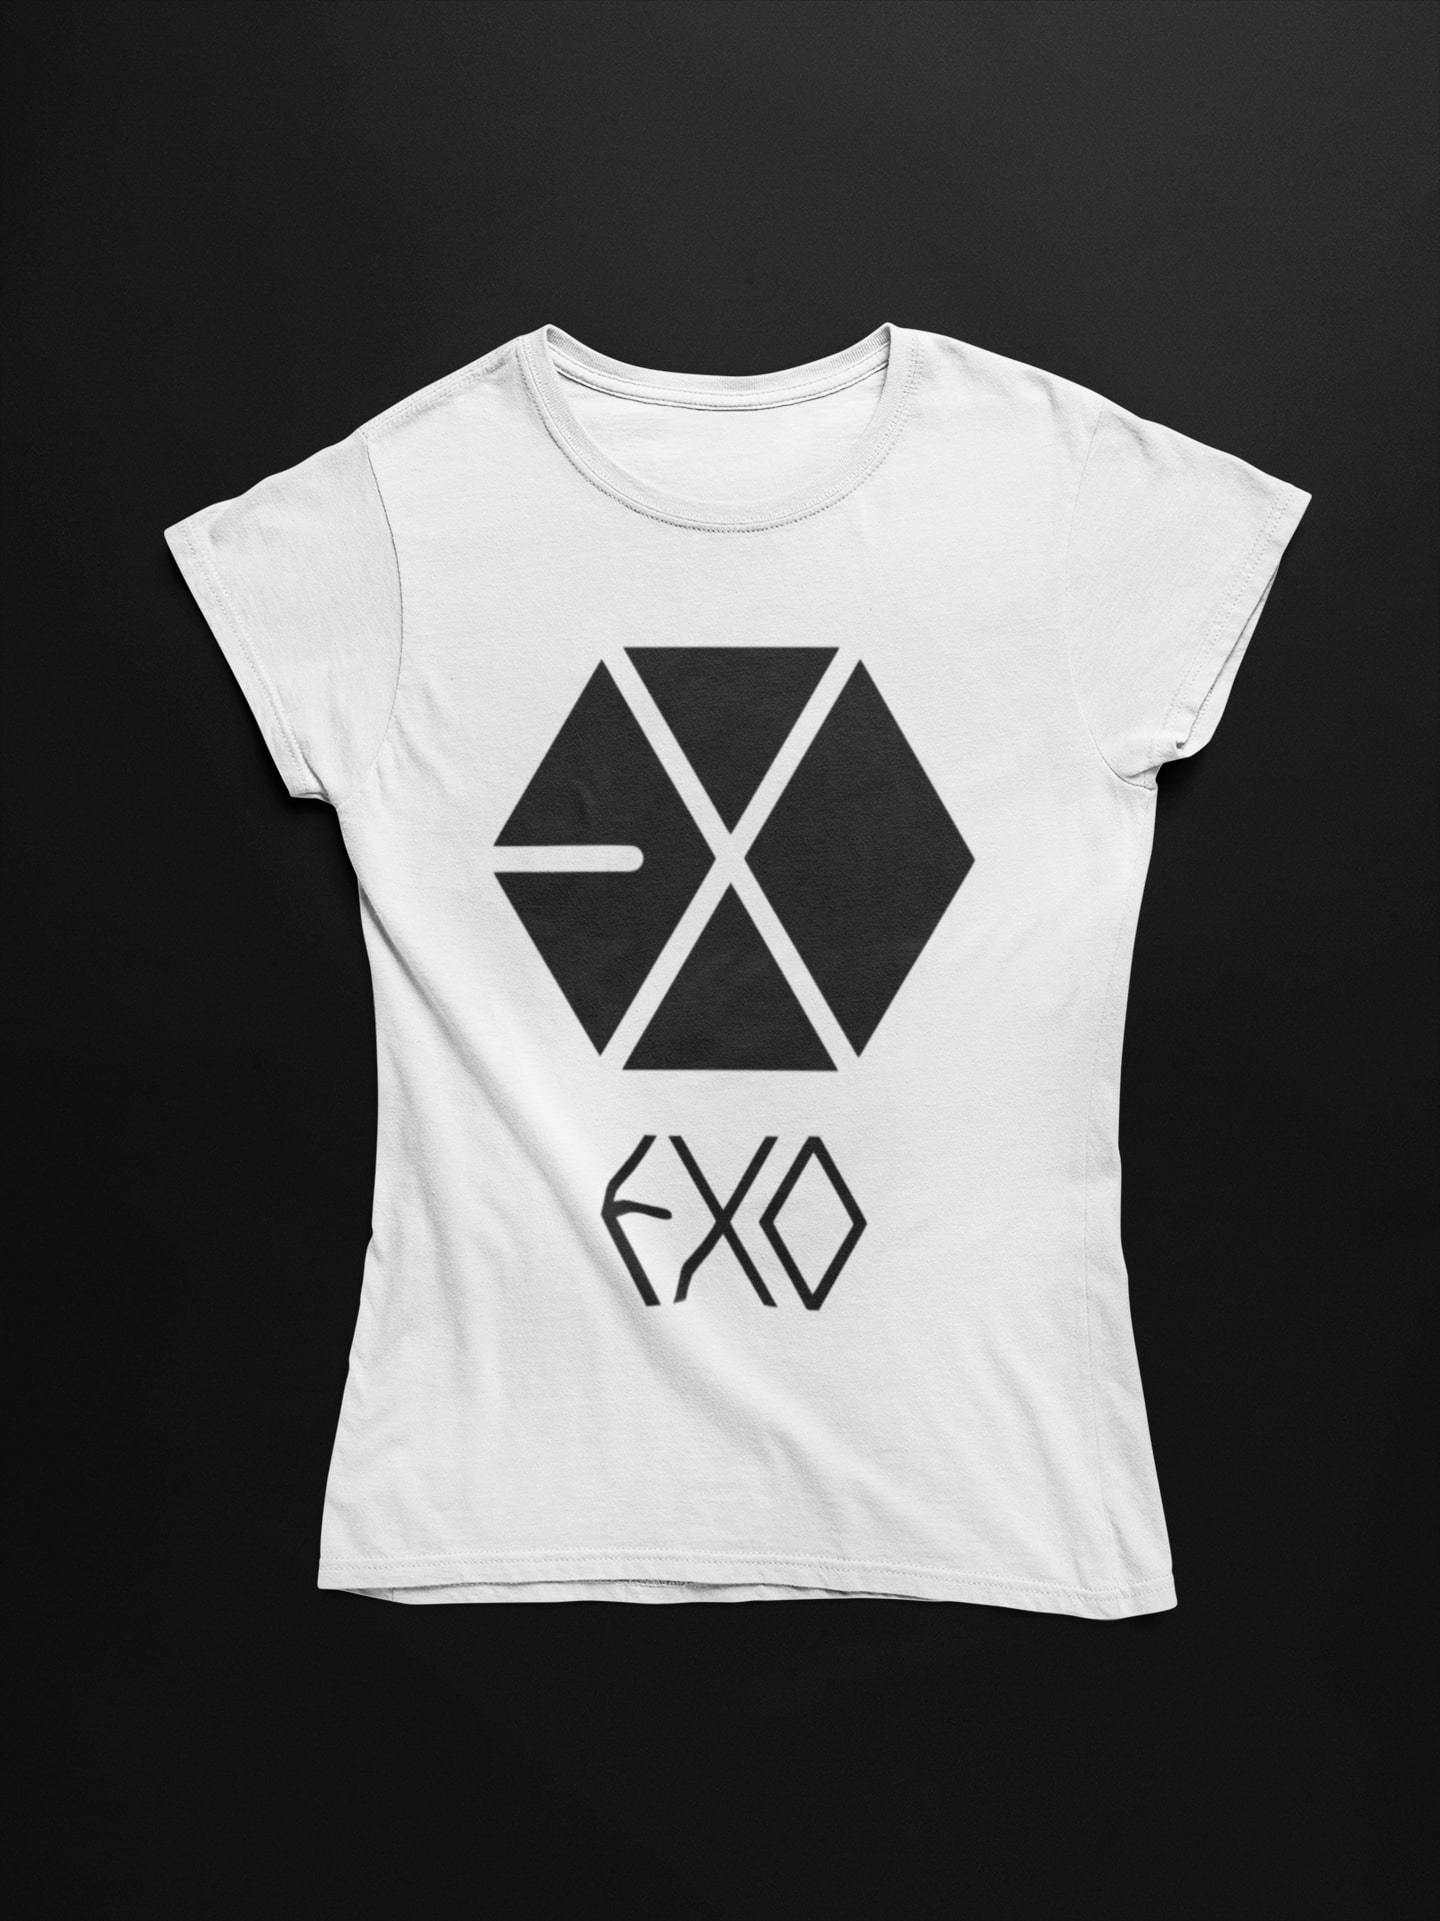 thelegalgang,KPOP EXO T-Shirt for Women,WOMEN.